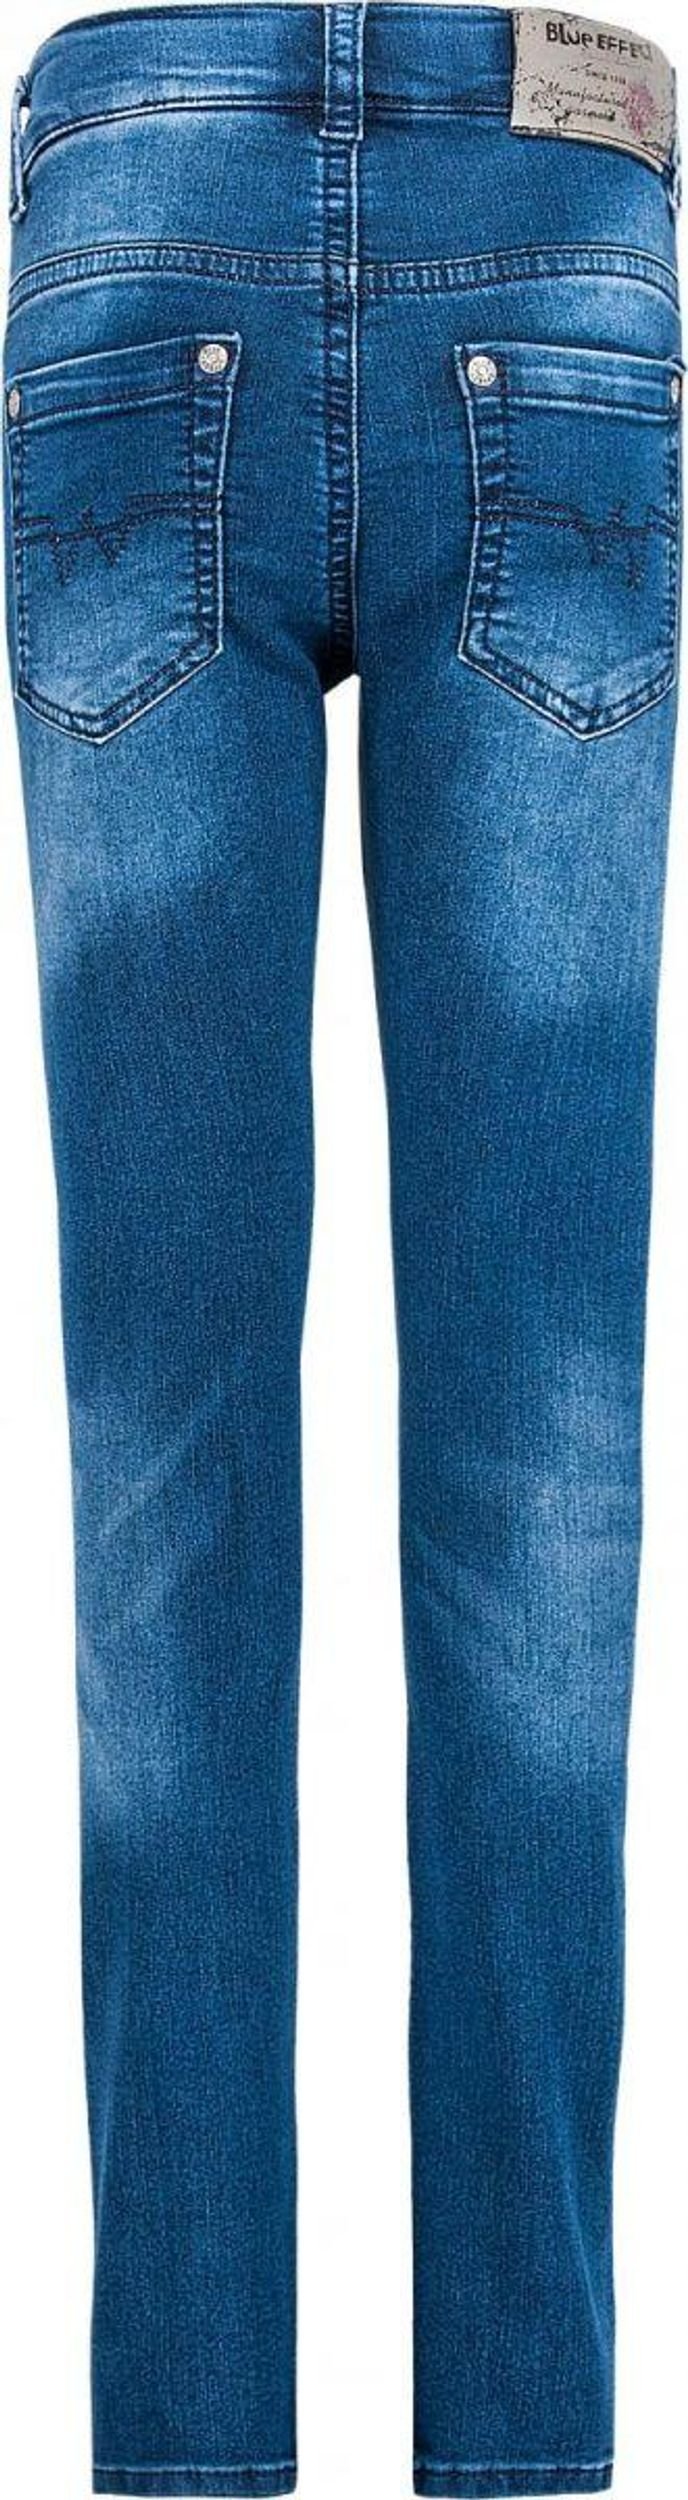 Blue Effect Jungen Skinny Jeans